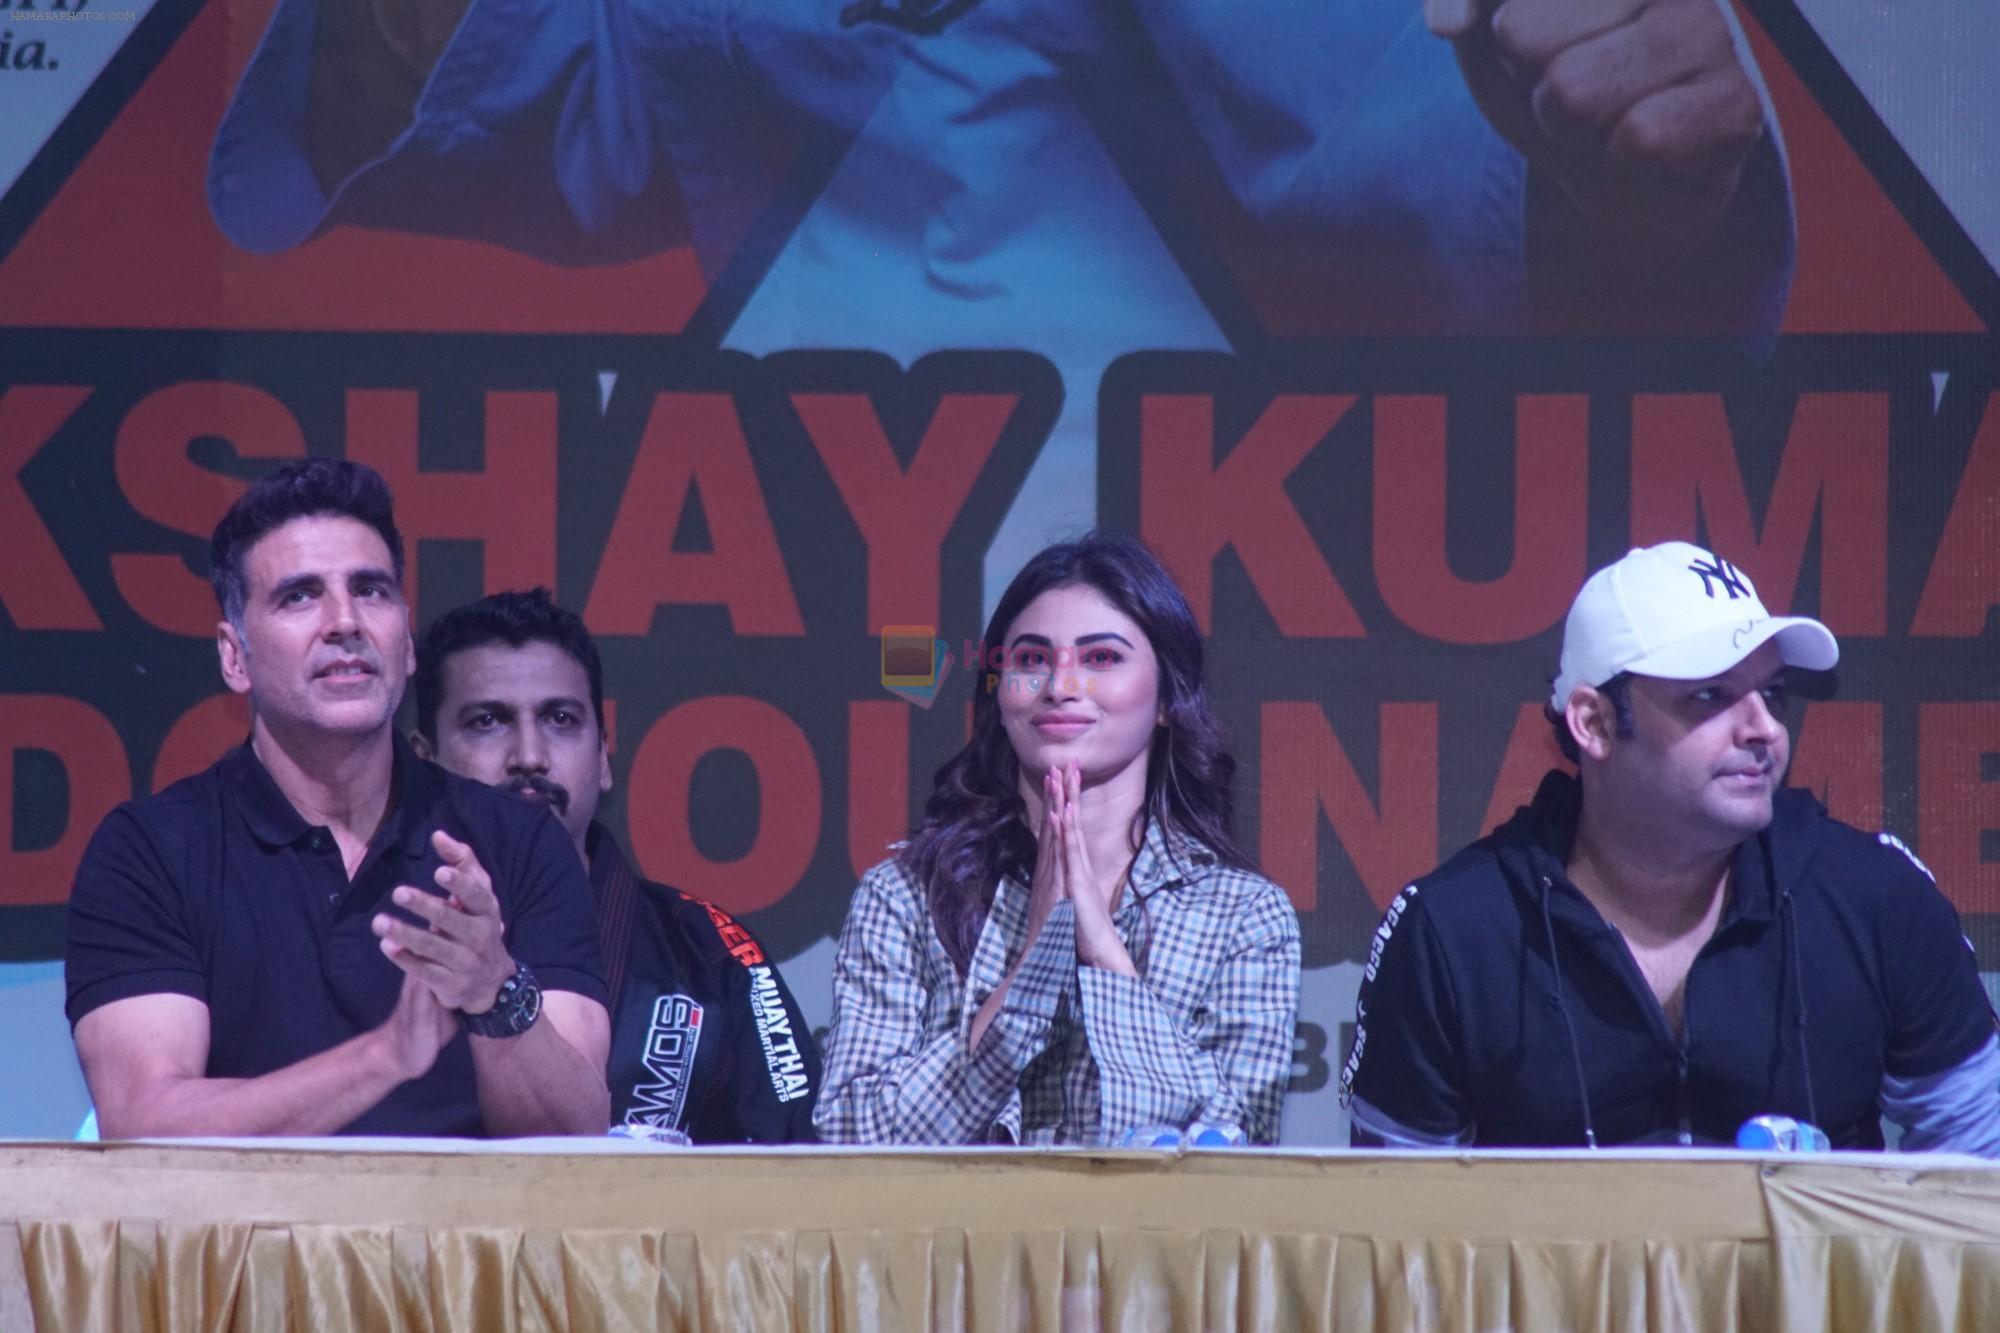 Akshay Kumar, Mouni Roy & Kapil Sharma  at the 10th Akshay Kumar Kudo Tournament on 22nd Nov 2018